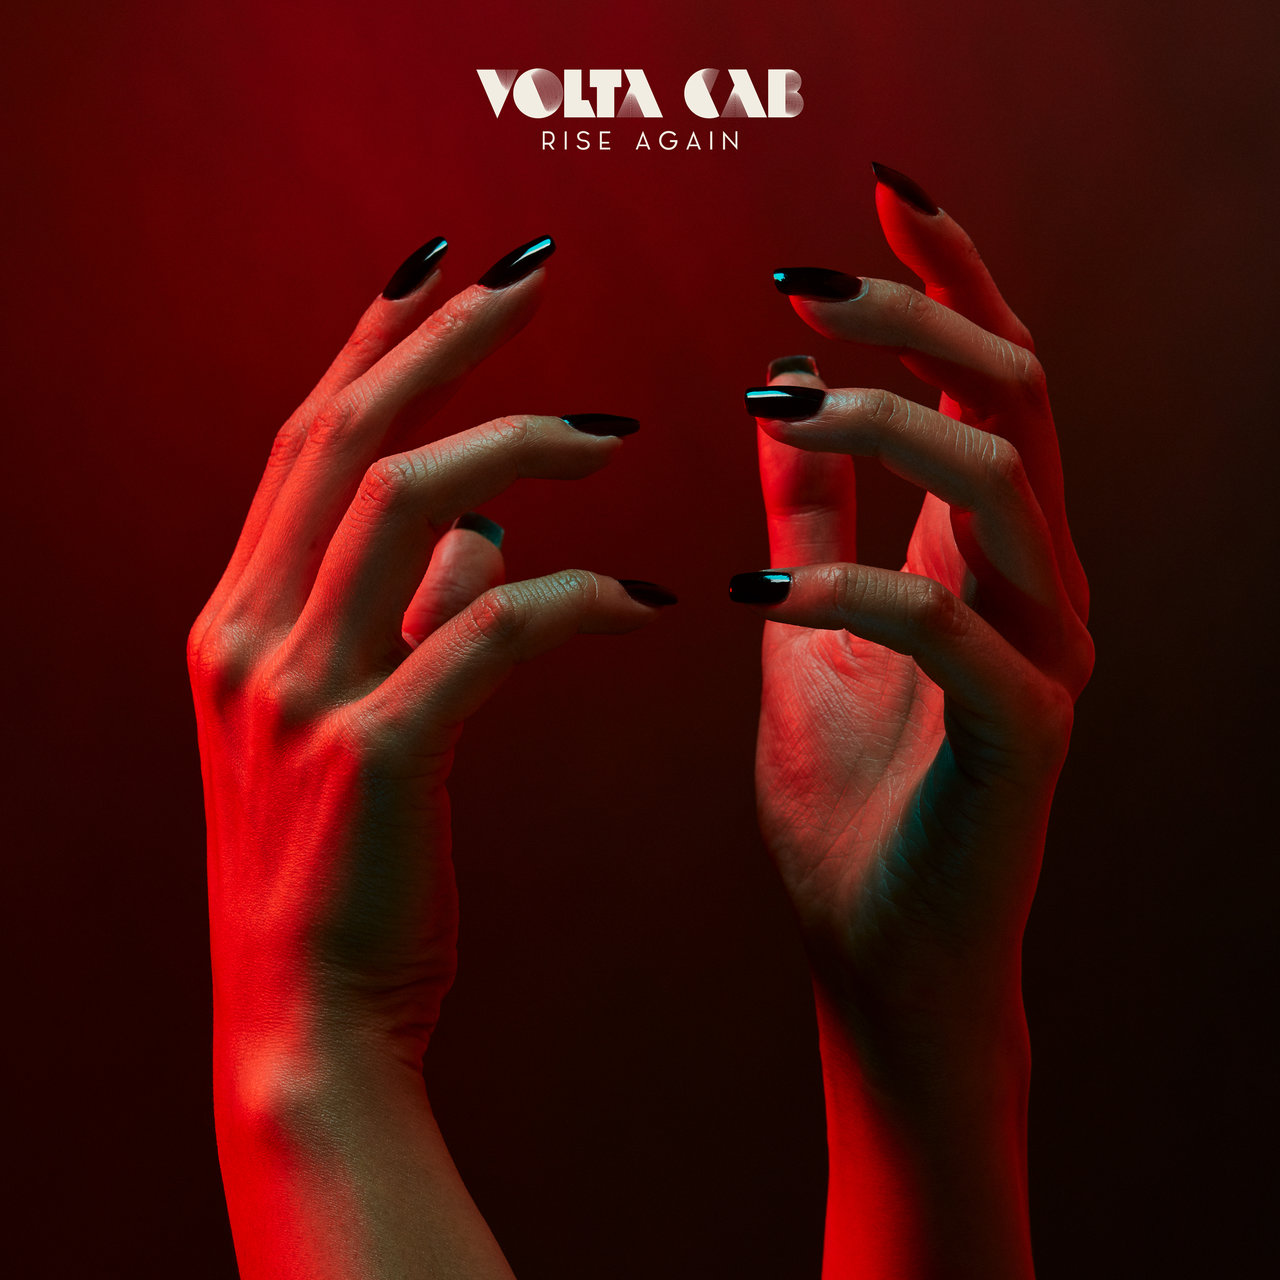 Volta Cab - Rise Again / Bordello A Parigi